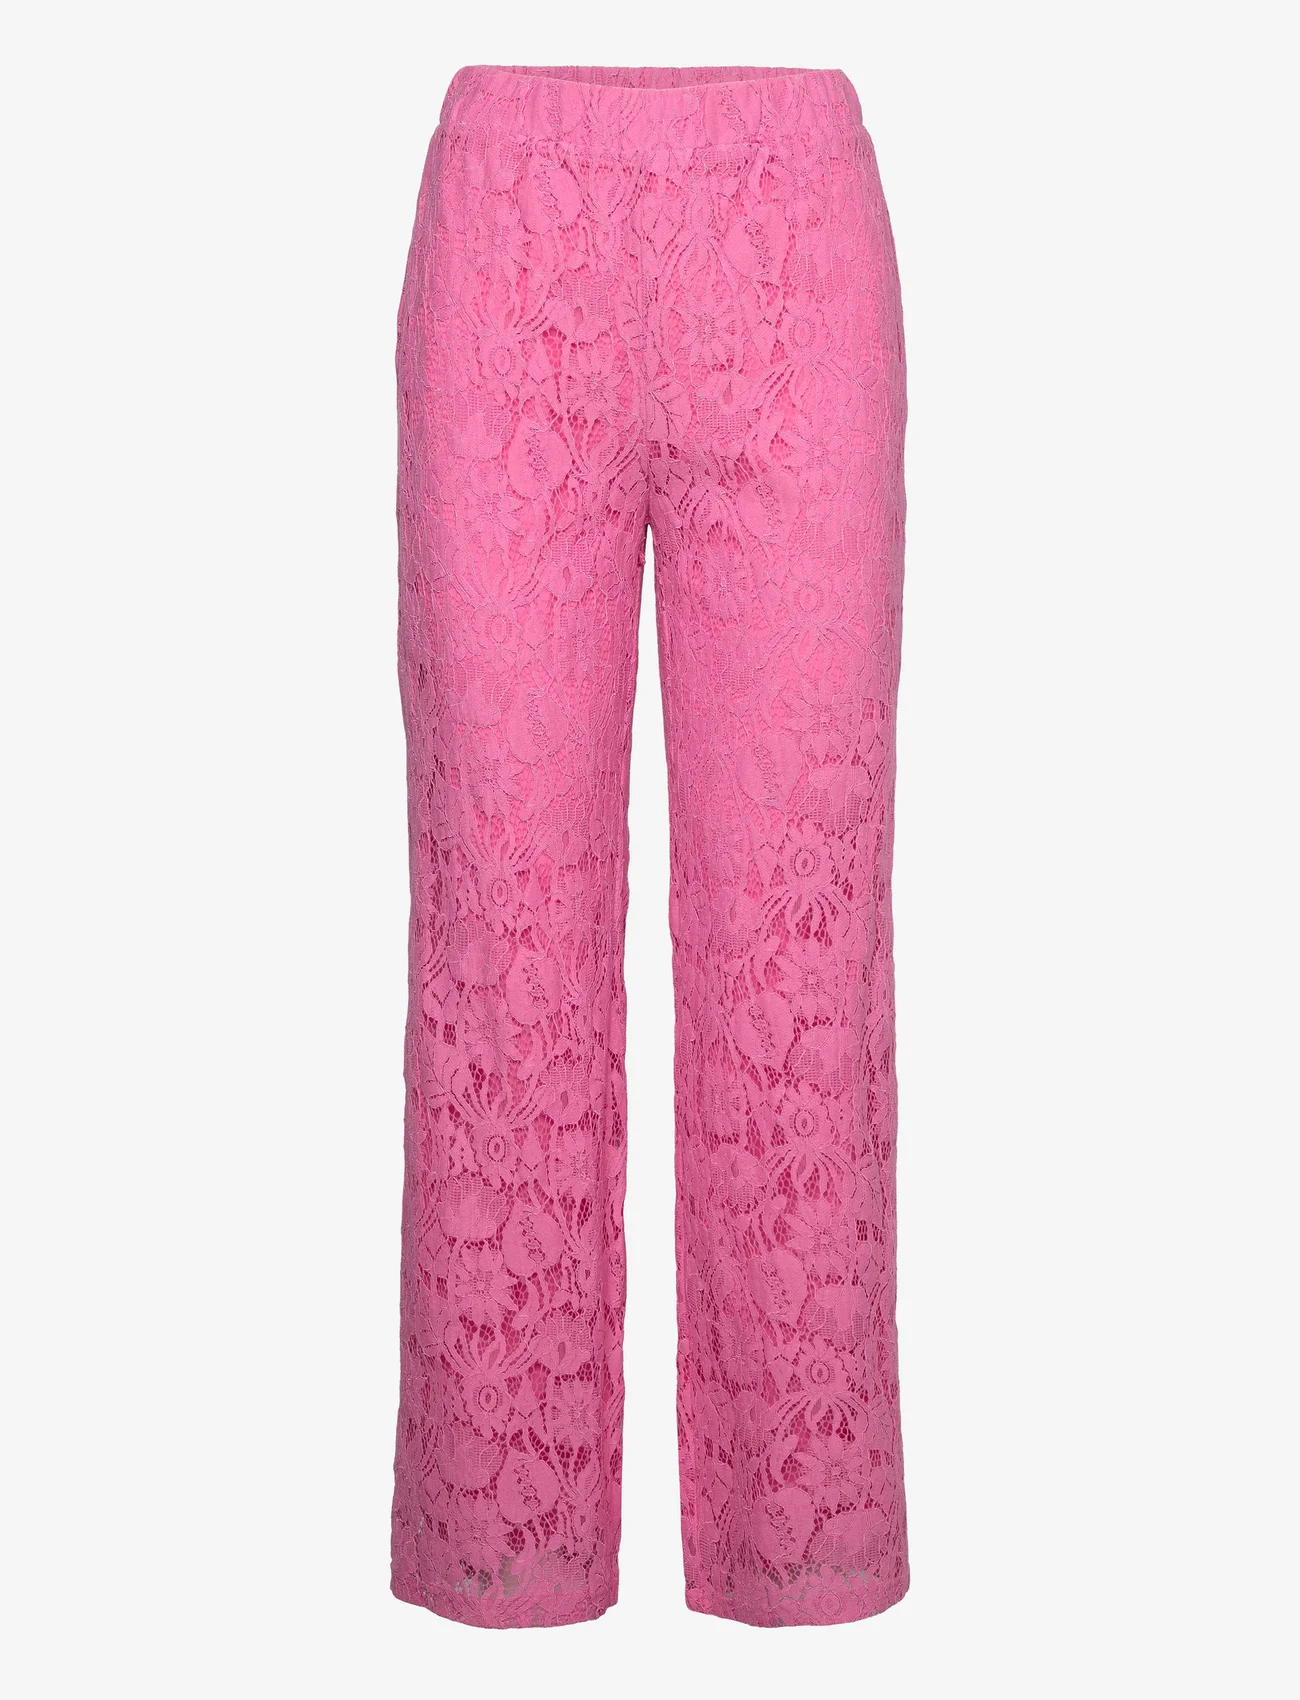 Noella - Macenna Pants - bukser med lige ben - candy pink - 0